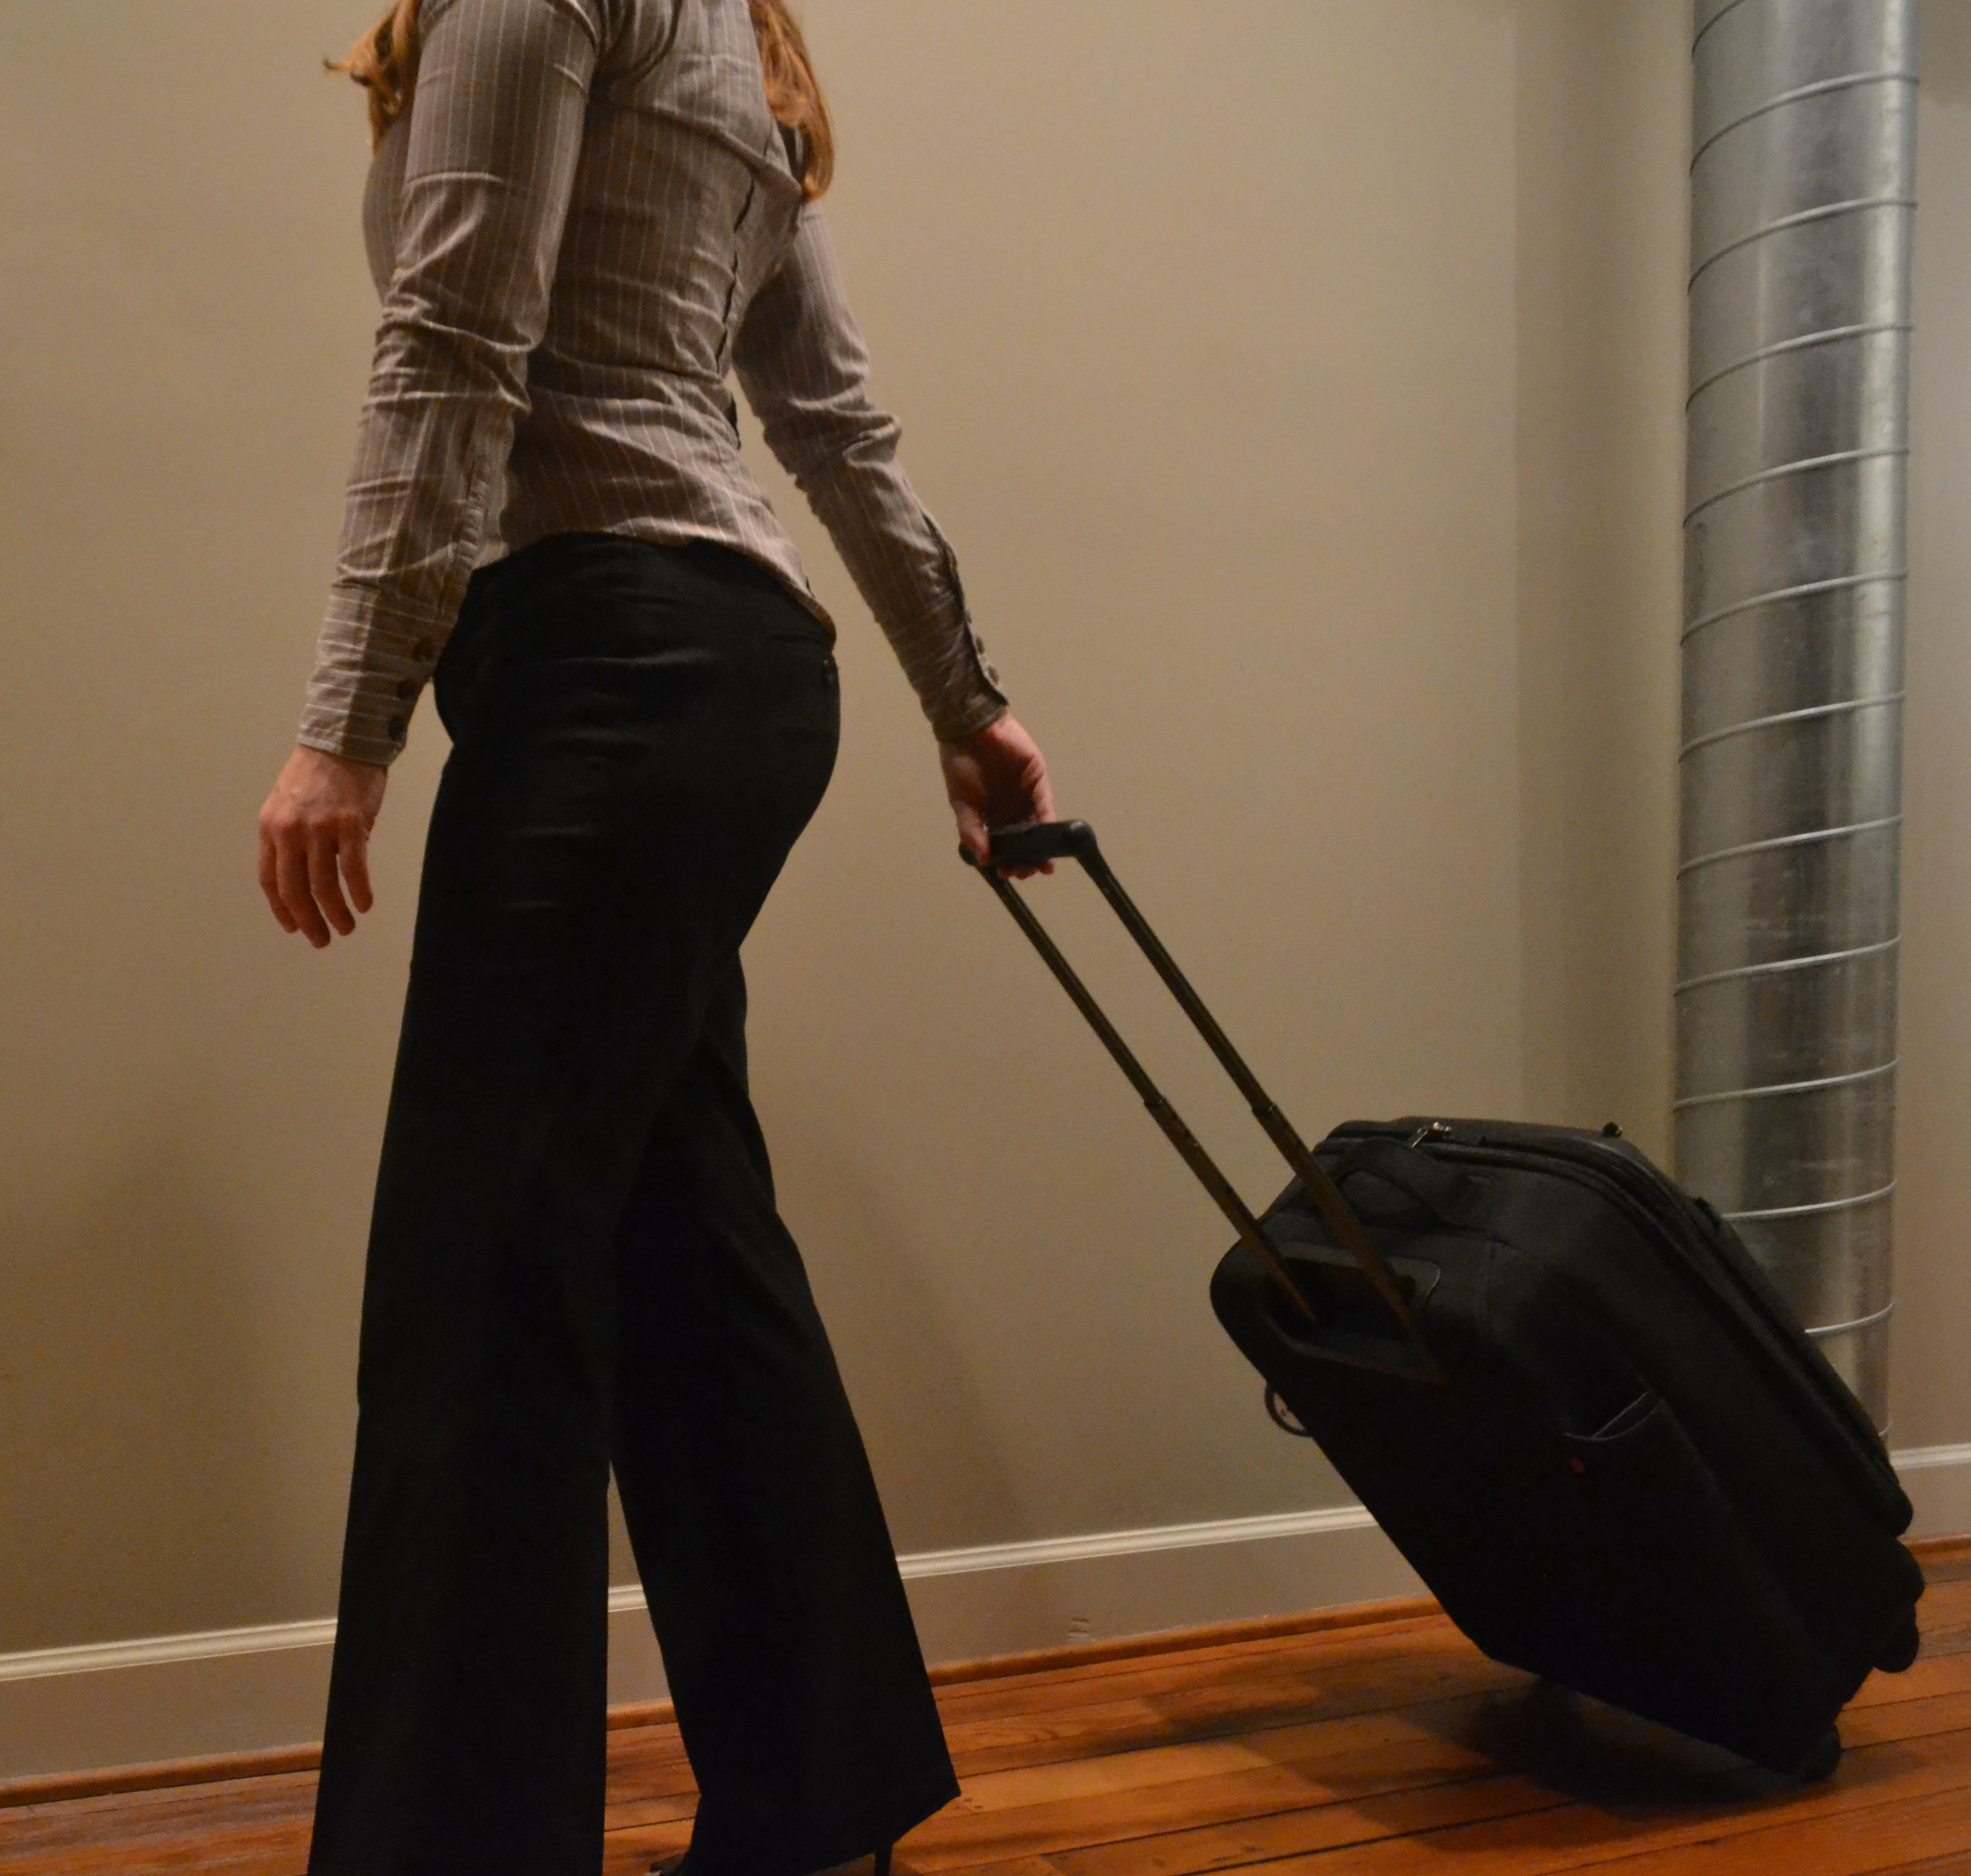 Flights: Always pack ziplock bags in hand luggage to make travel